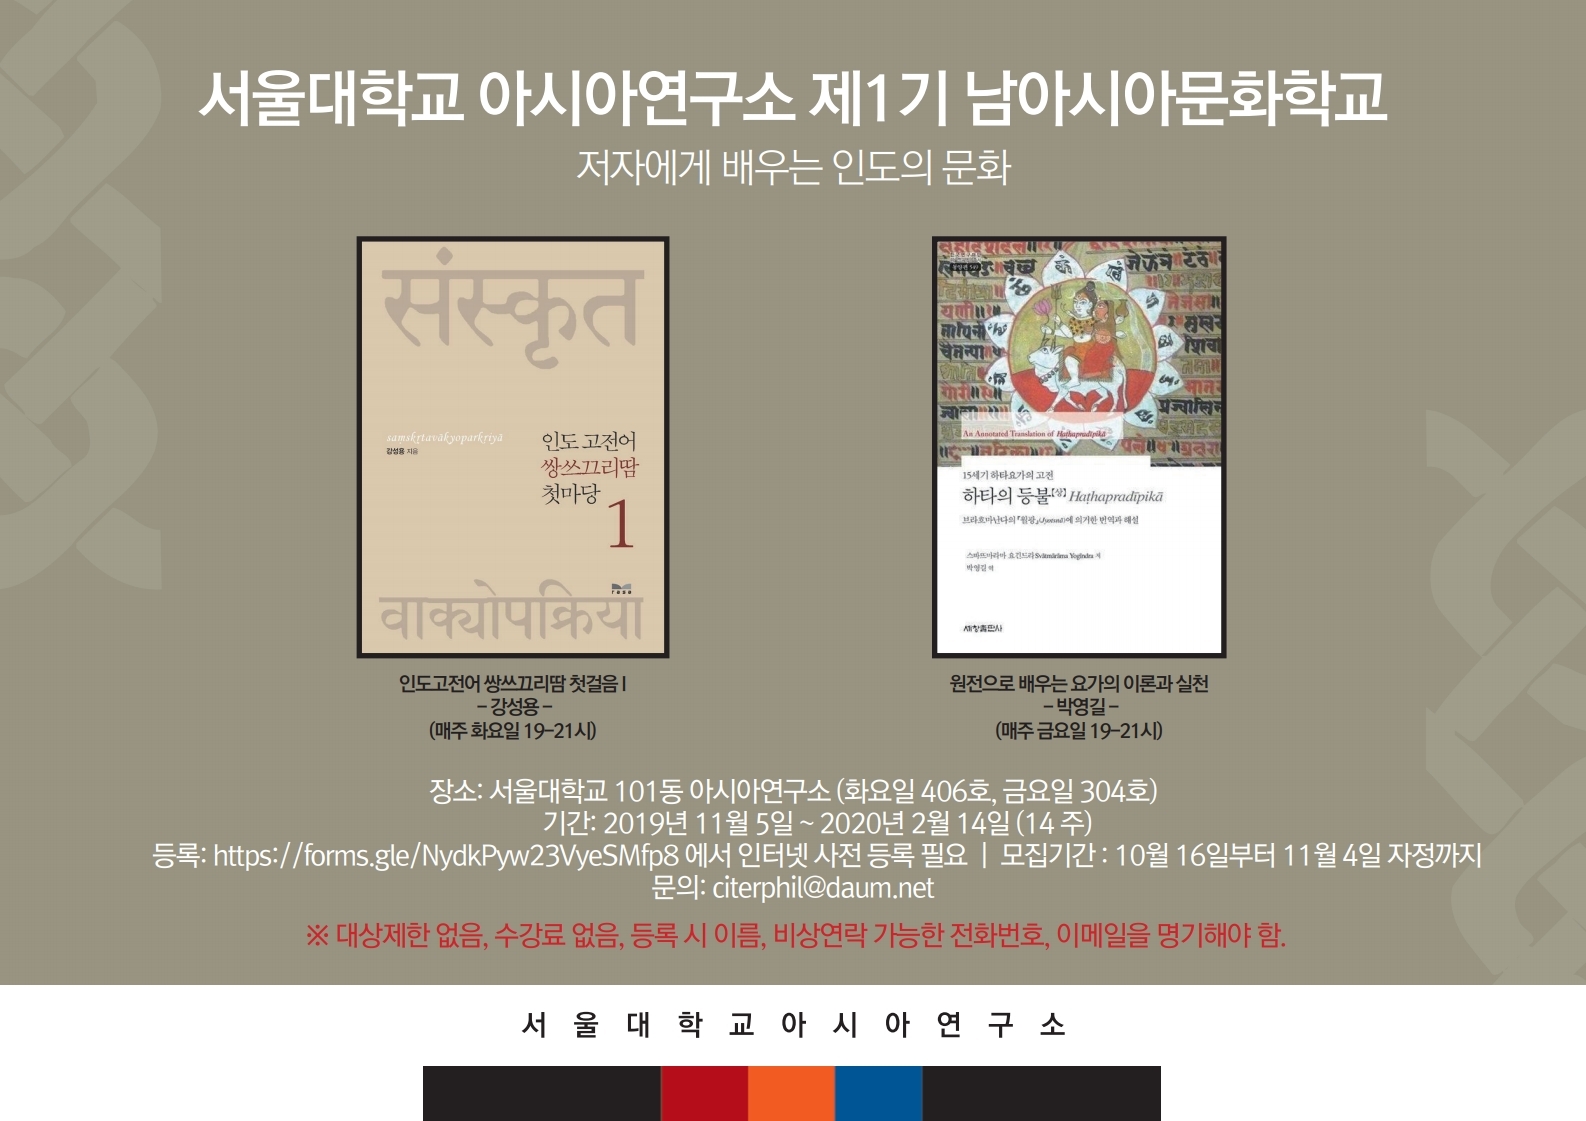 [공지] 서울대학교 아시아연구소 제1기 남아시아문화학교 모집